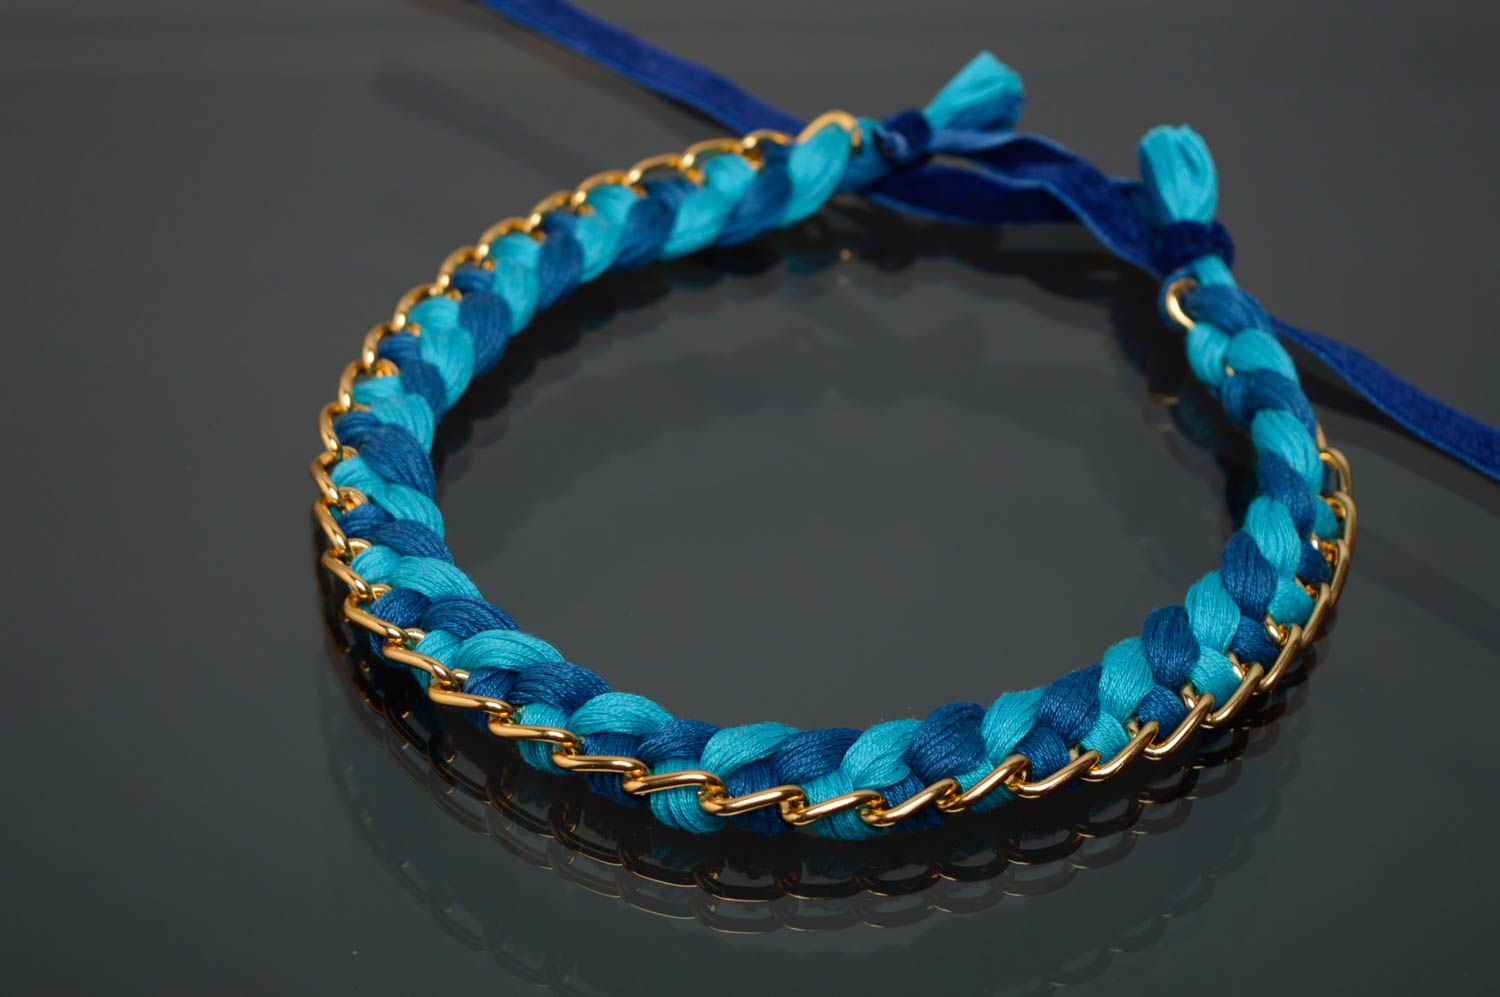 Текстильное ожерелье из нитей мулине и цепочки синее фото 1